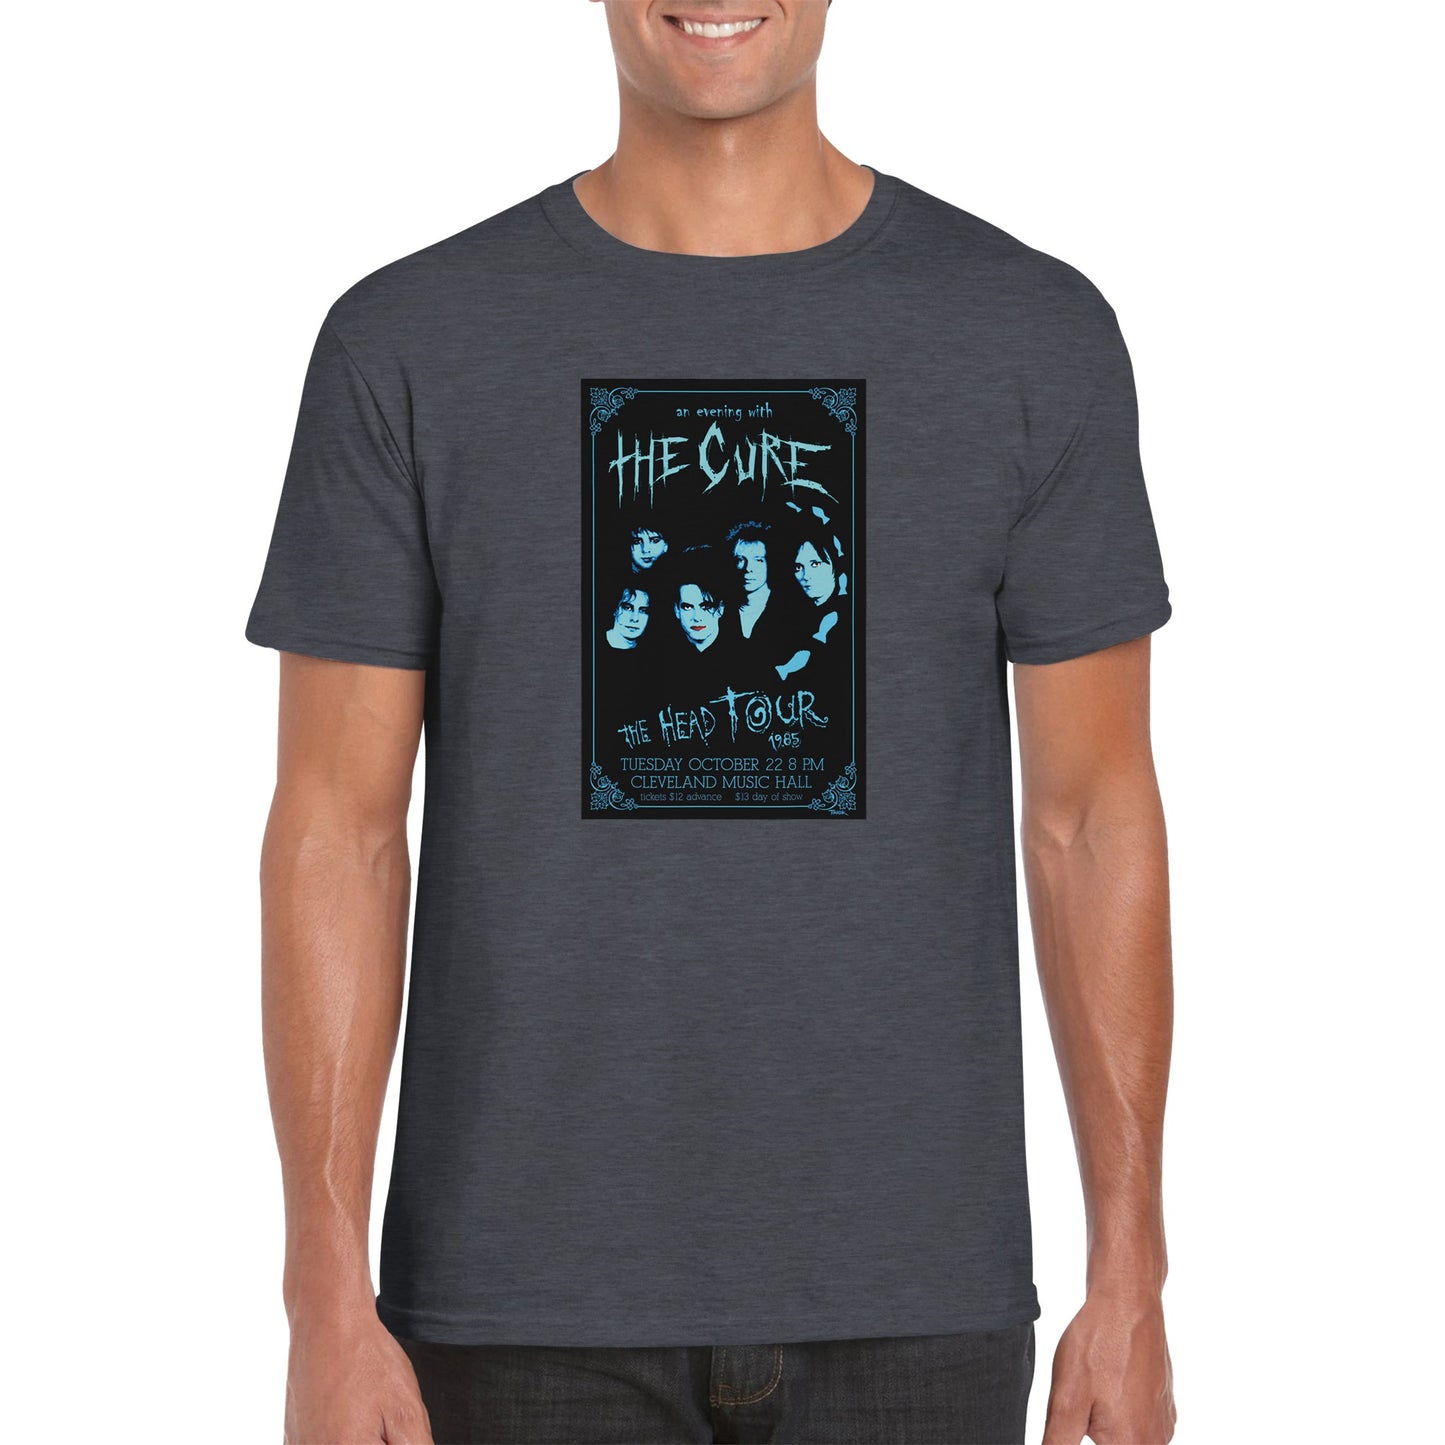 The Cure Classic Unisex Crewneck T-shirt - Posterify